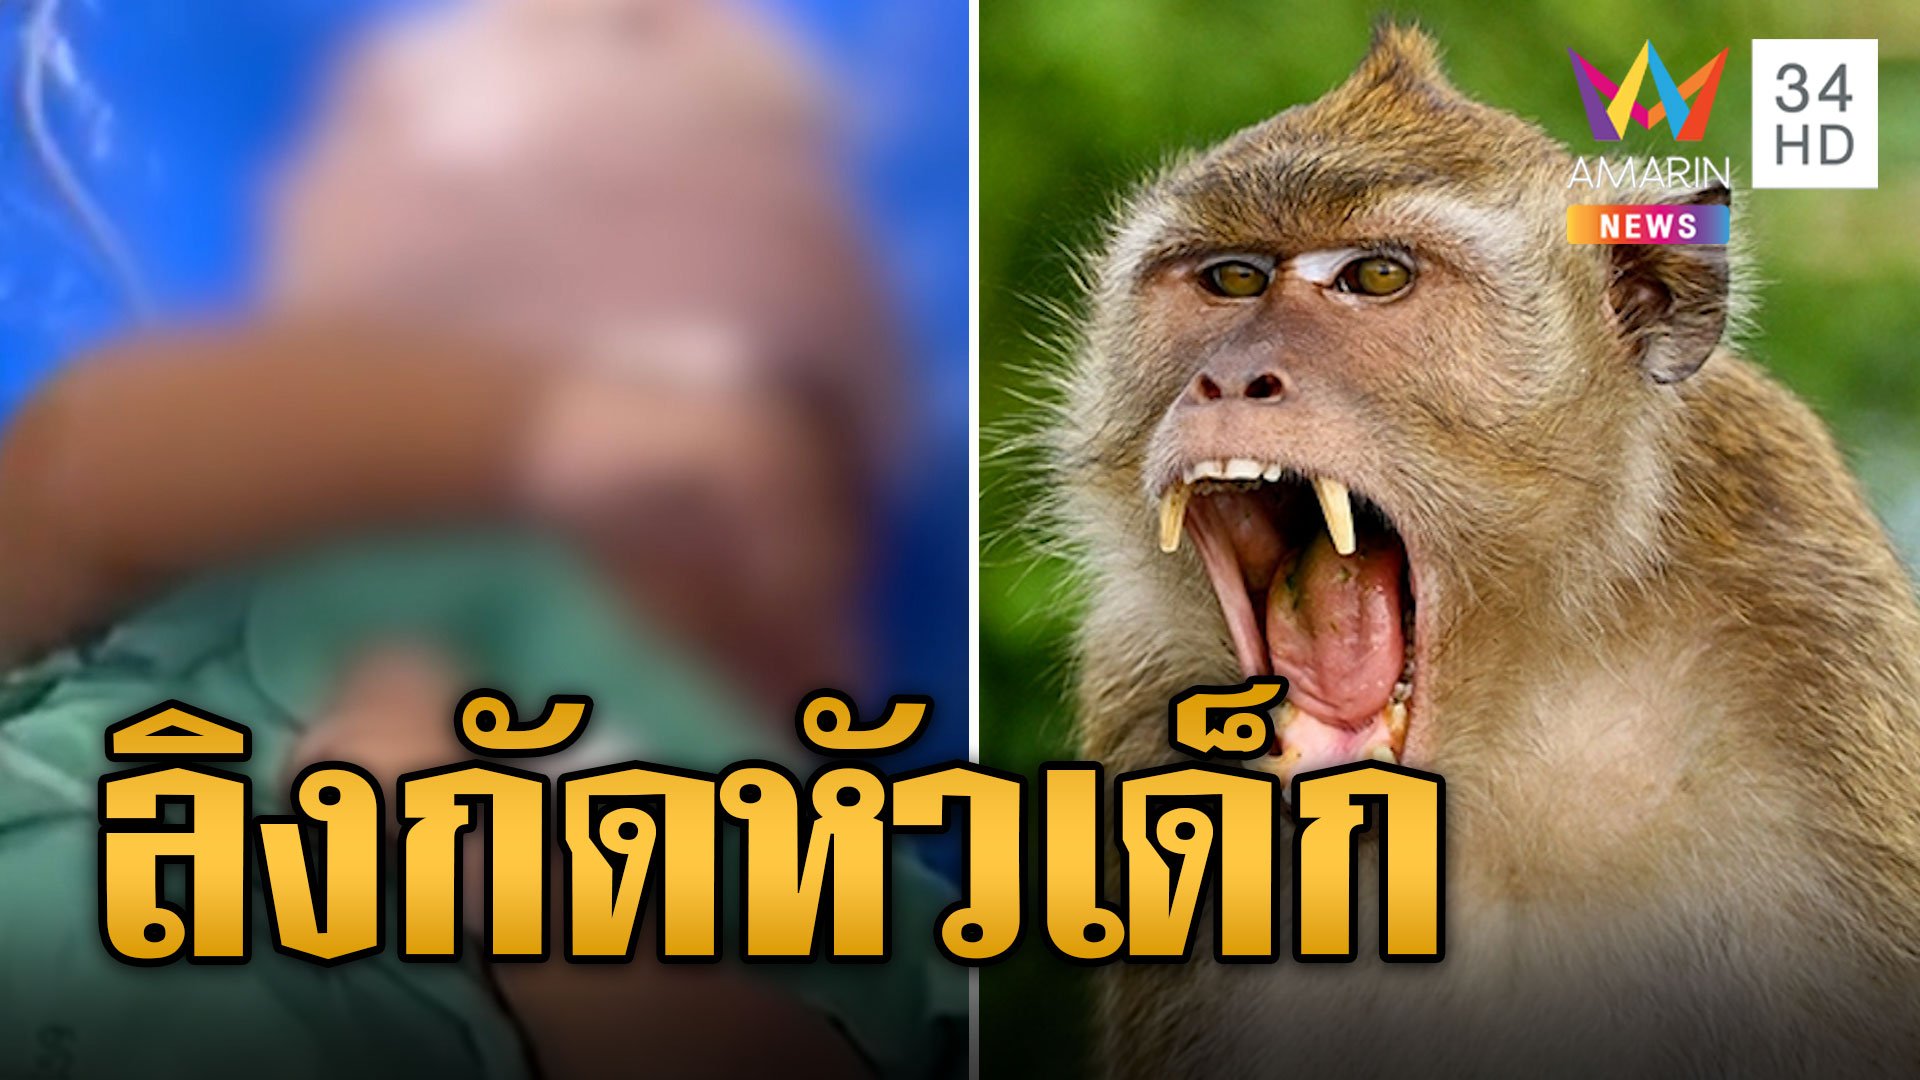 ผวา! ลิงแสม เกาะไม่ไผ่ กัดหัวเด็ก 3 เดือน ทะลุกะโหลก | ข่าวอรุณอมรินทร์ | 15 พ.ย. 66 | AMARIN TVHD34